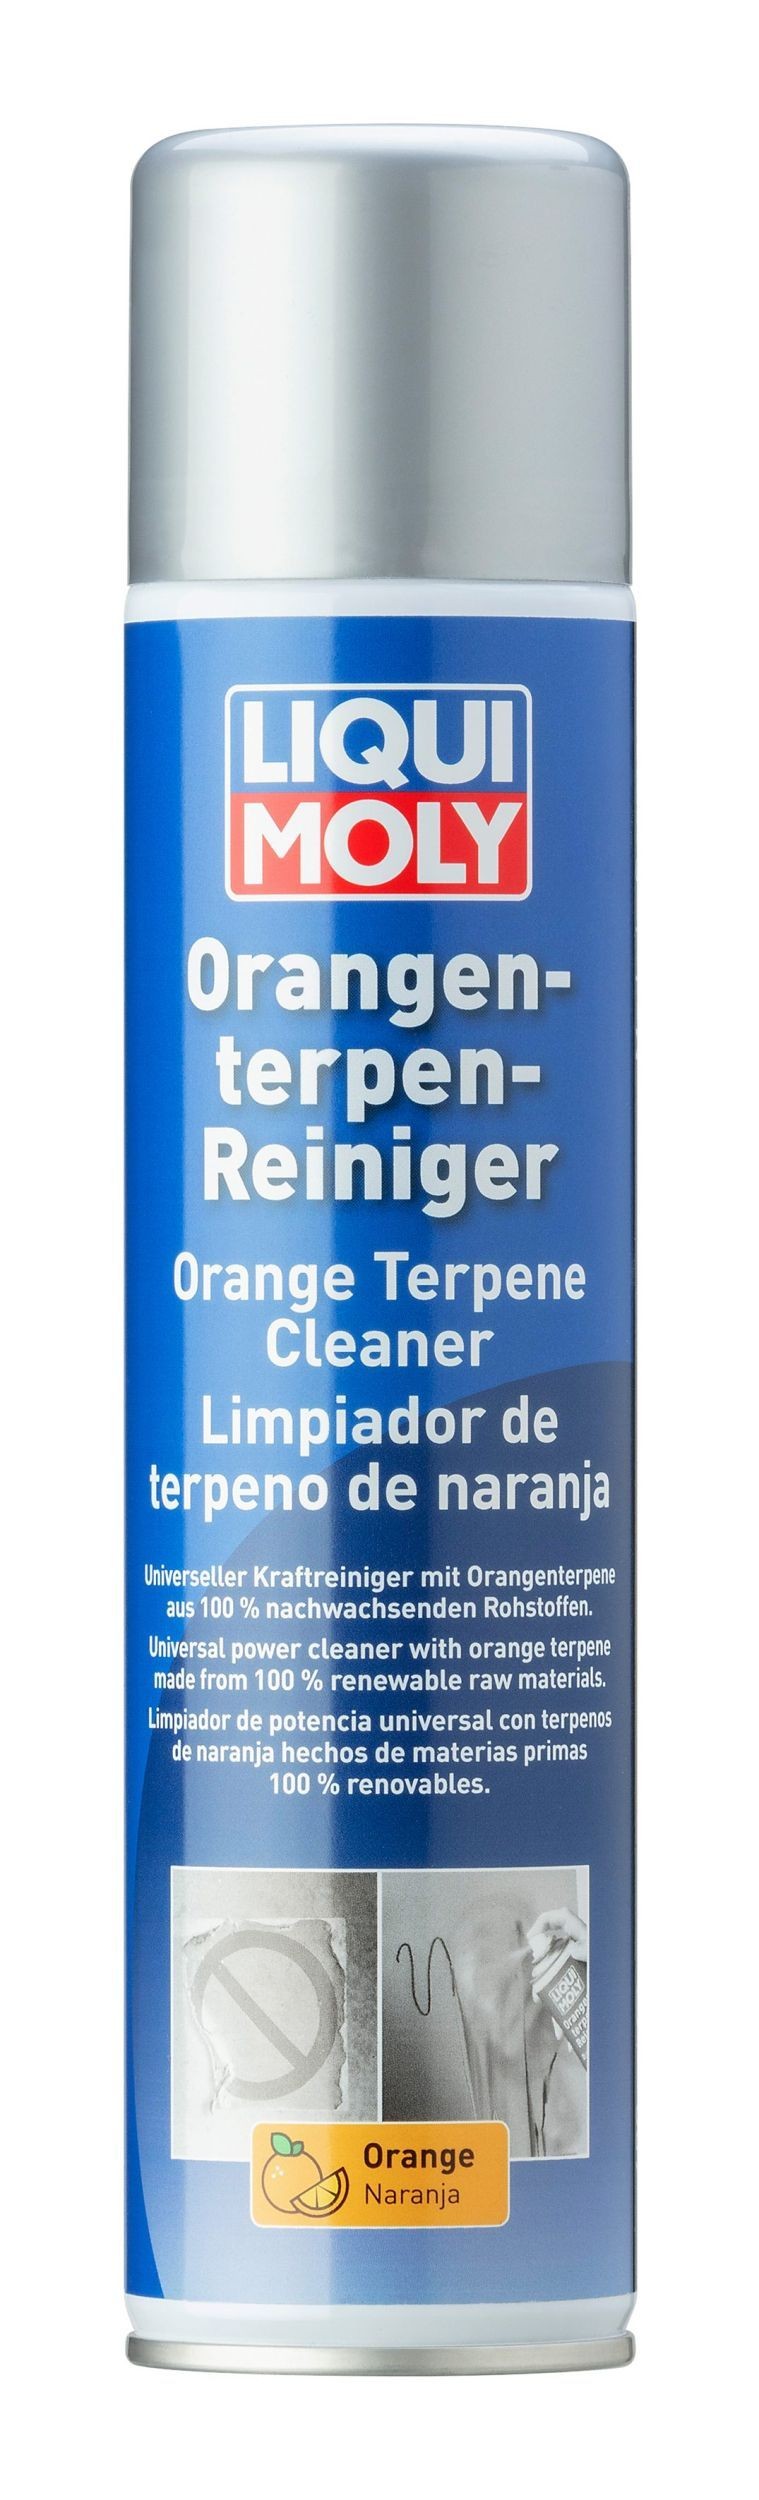 Orangenterpen-Reiniger LIQUI MOLY do fabricante até - % de desconto!